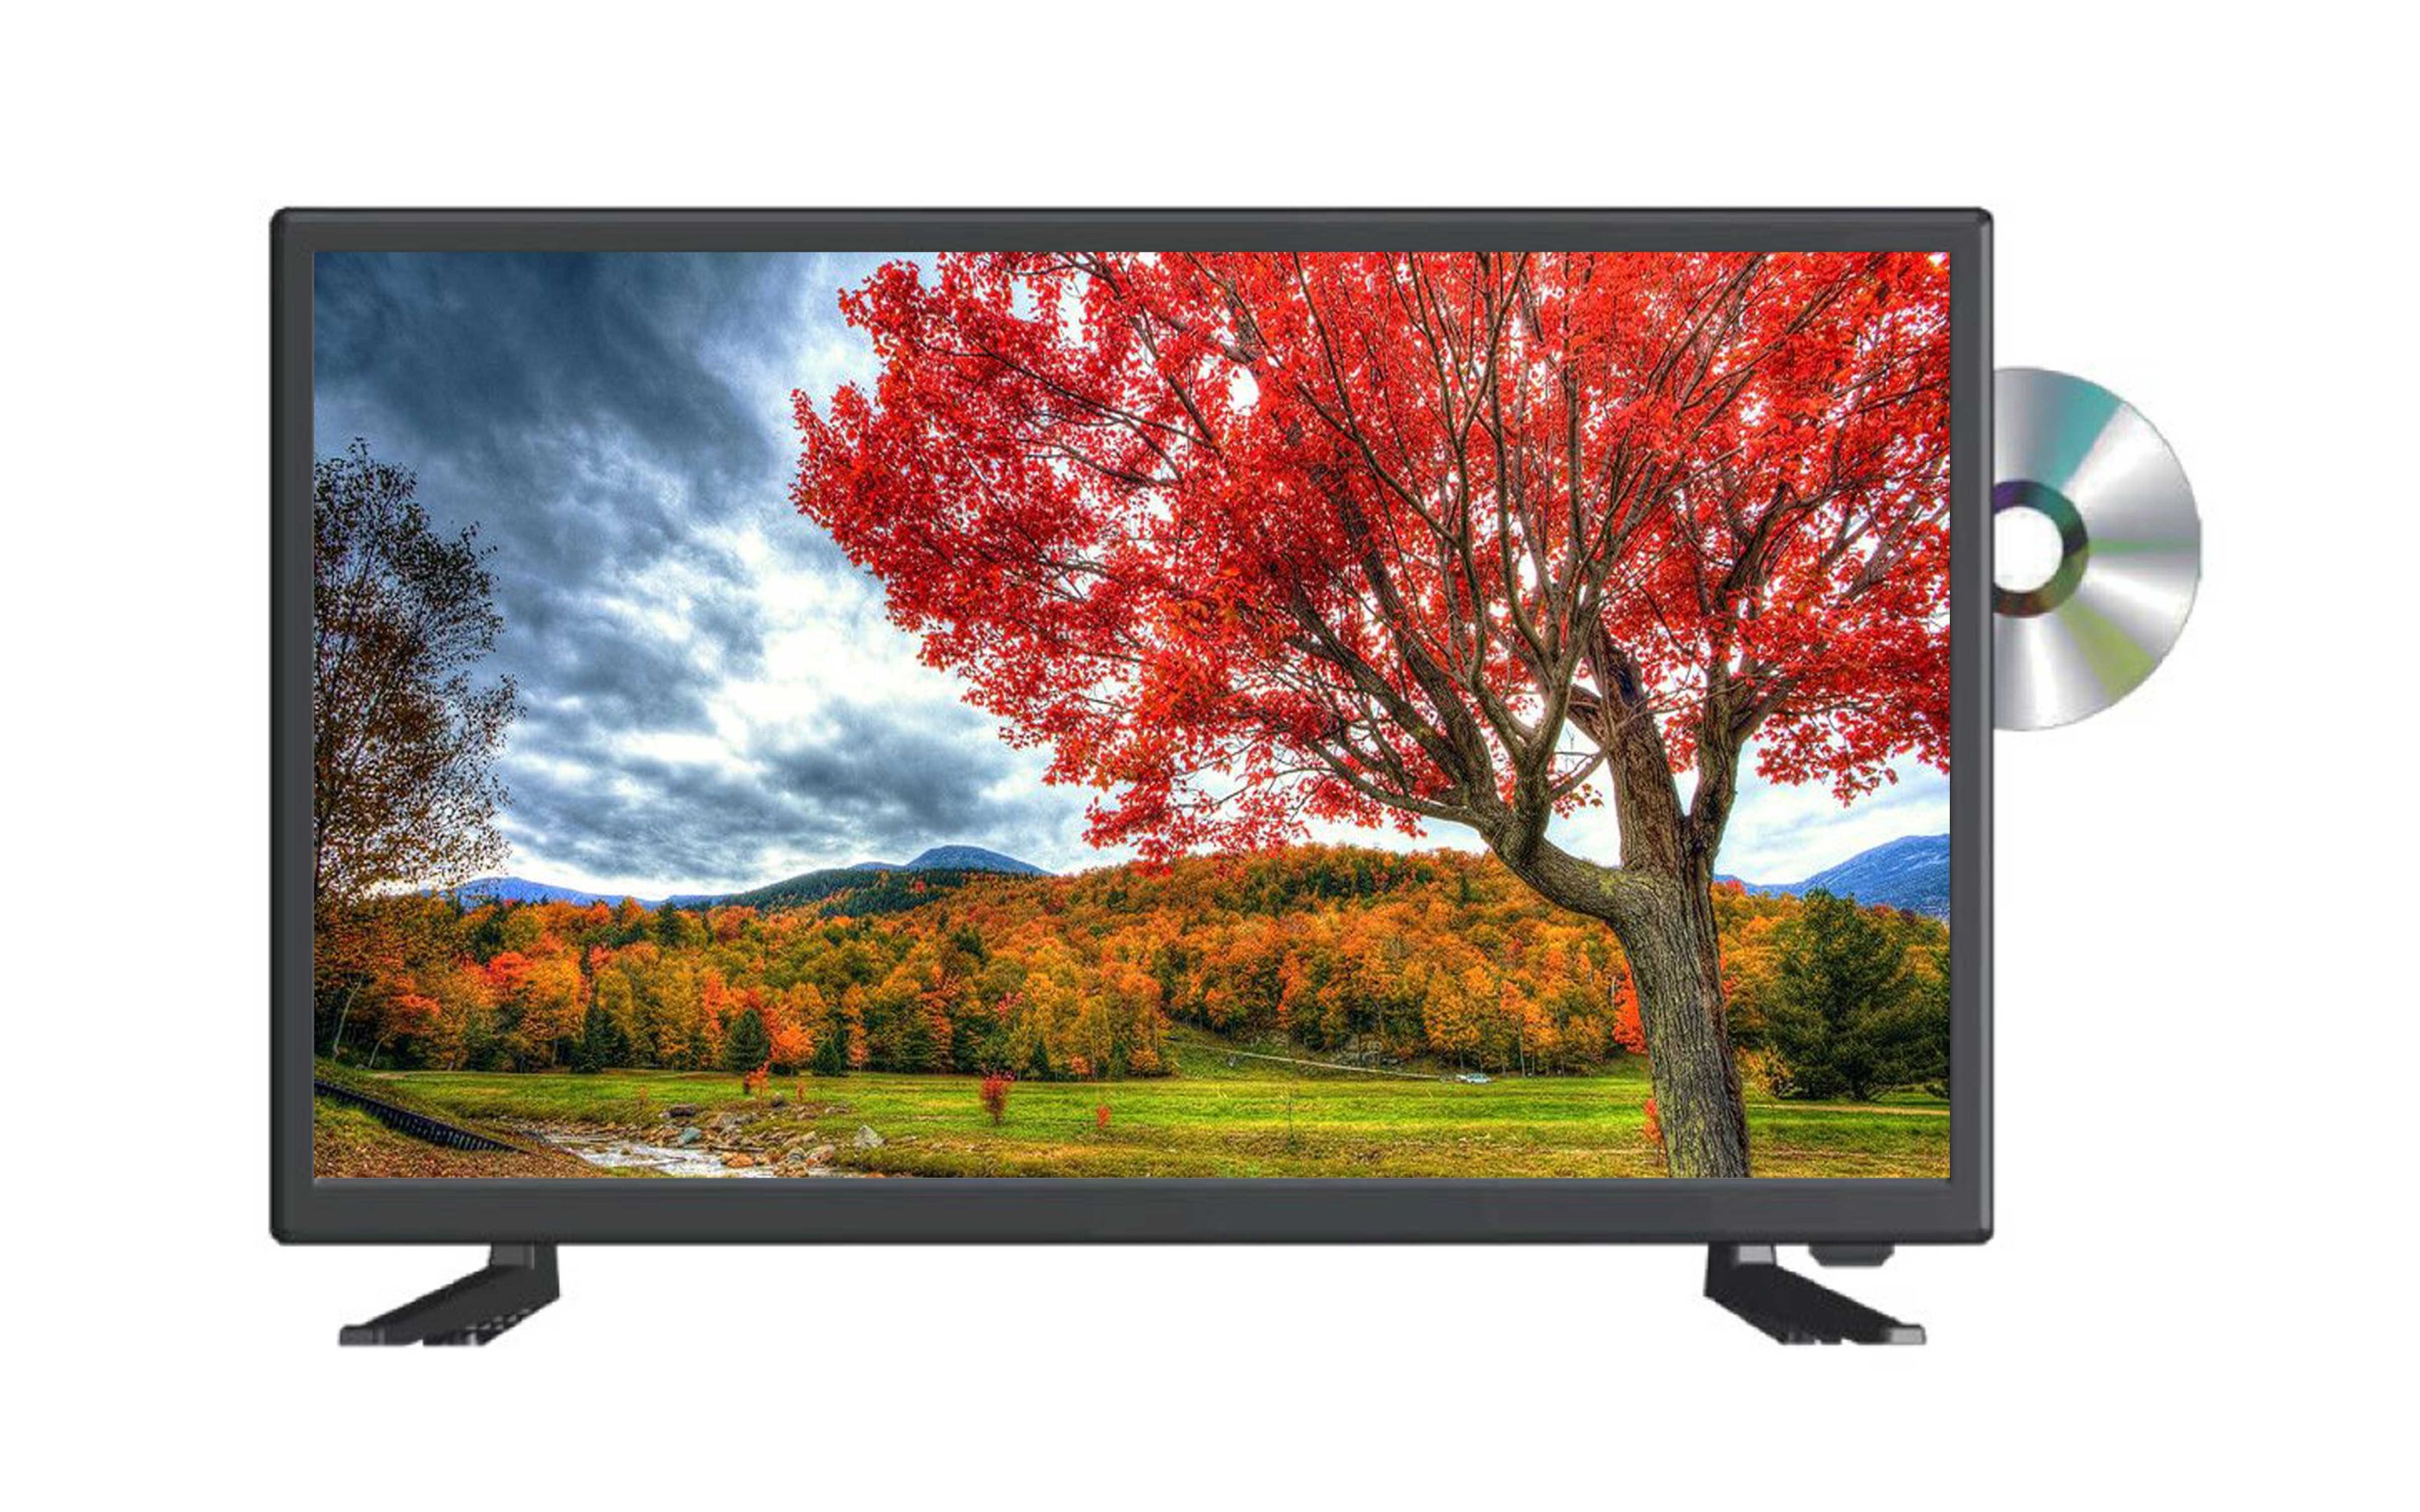 在庫販売 新品 WIS AX-MSK50 ASTEX 有機ELテレビ 液晶テレビ テレビ